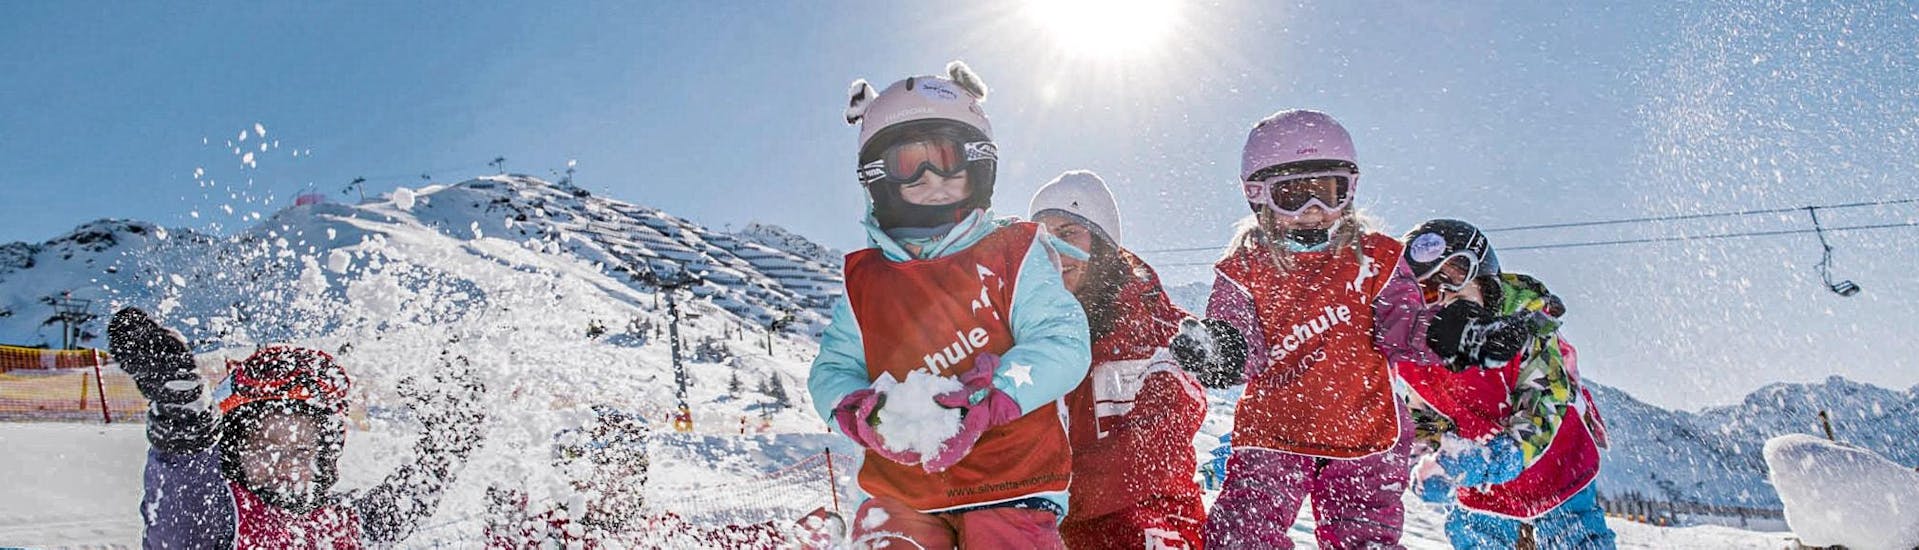 Clases de esquí para niños a partir de 3 años para debutantes con Skischule Schruns.